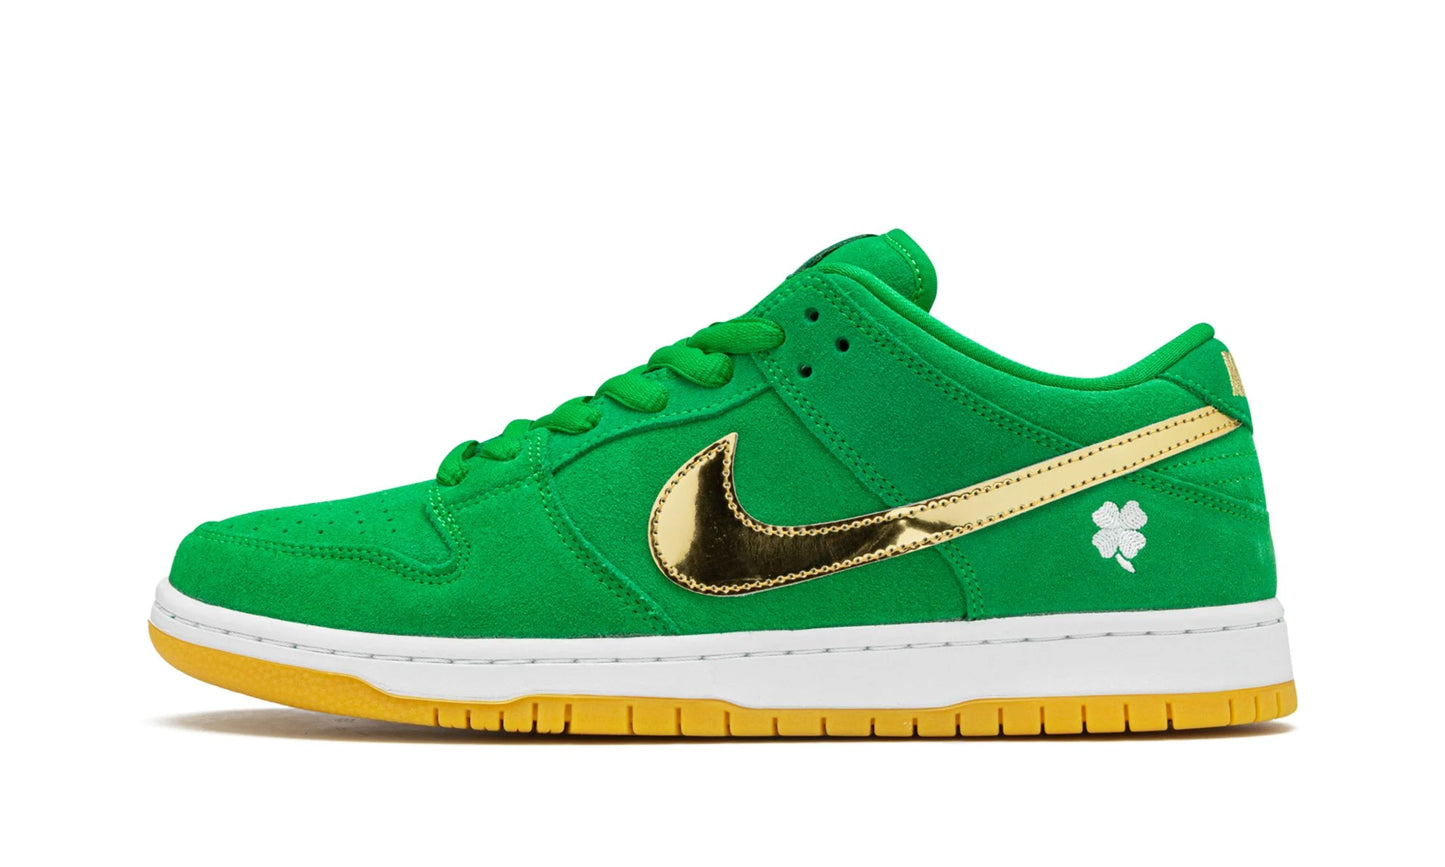 Nike SB Dunk Low “St. Patrick’s”